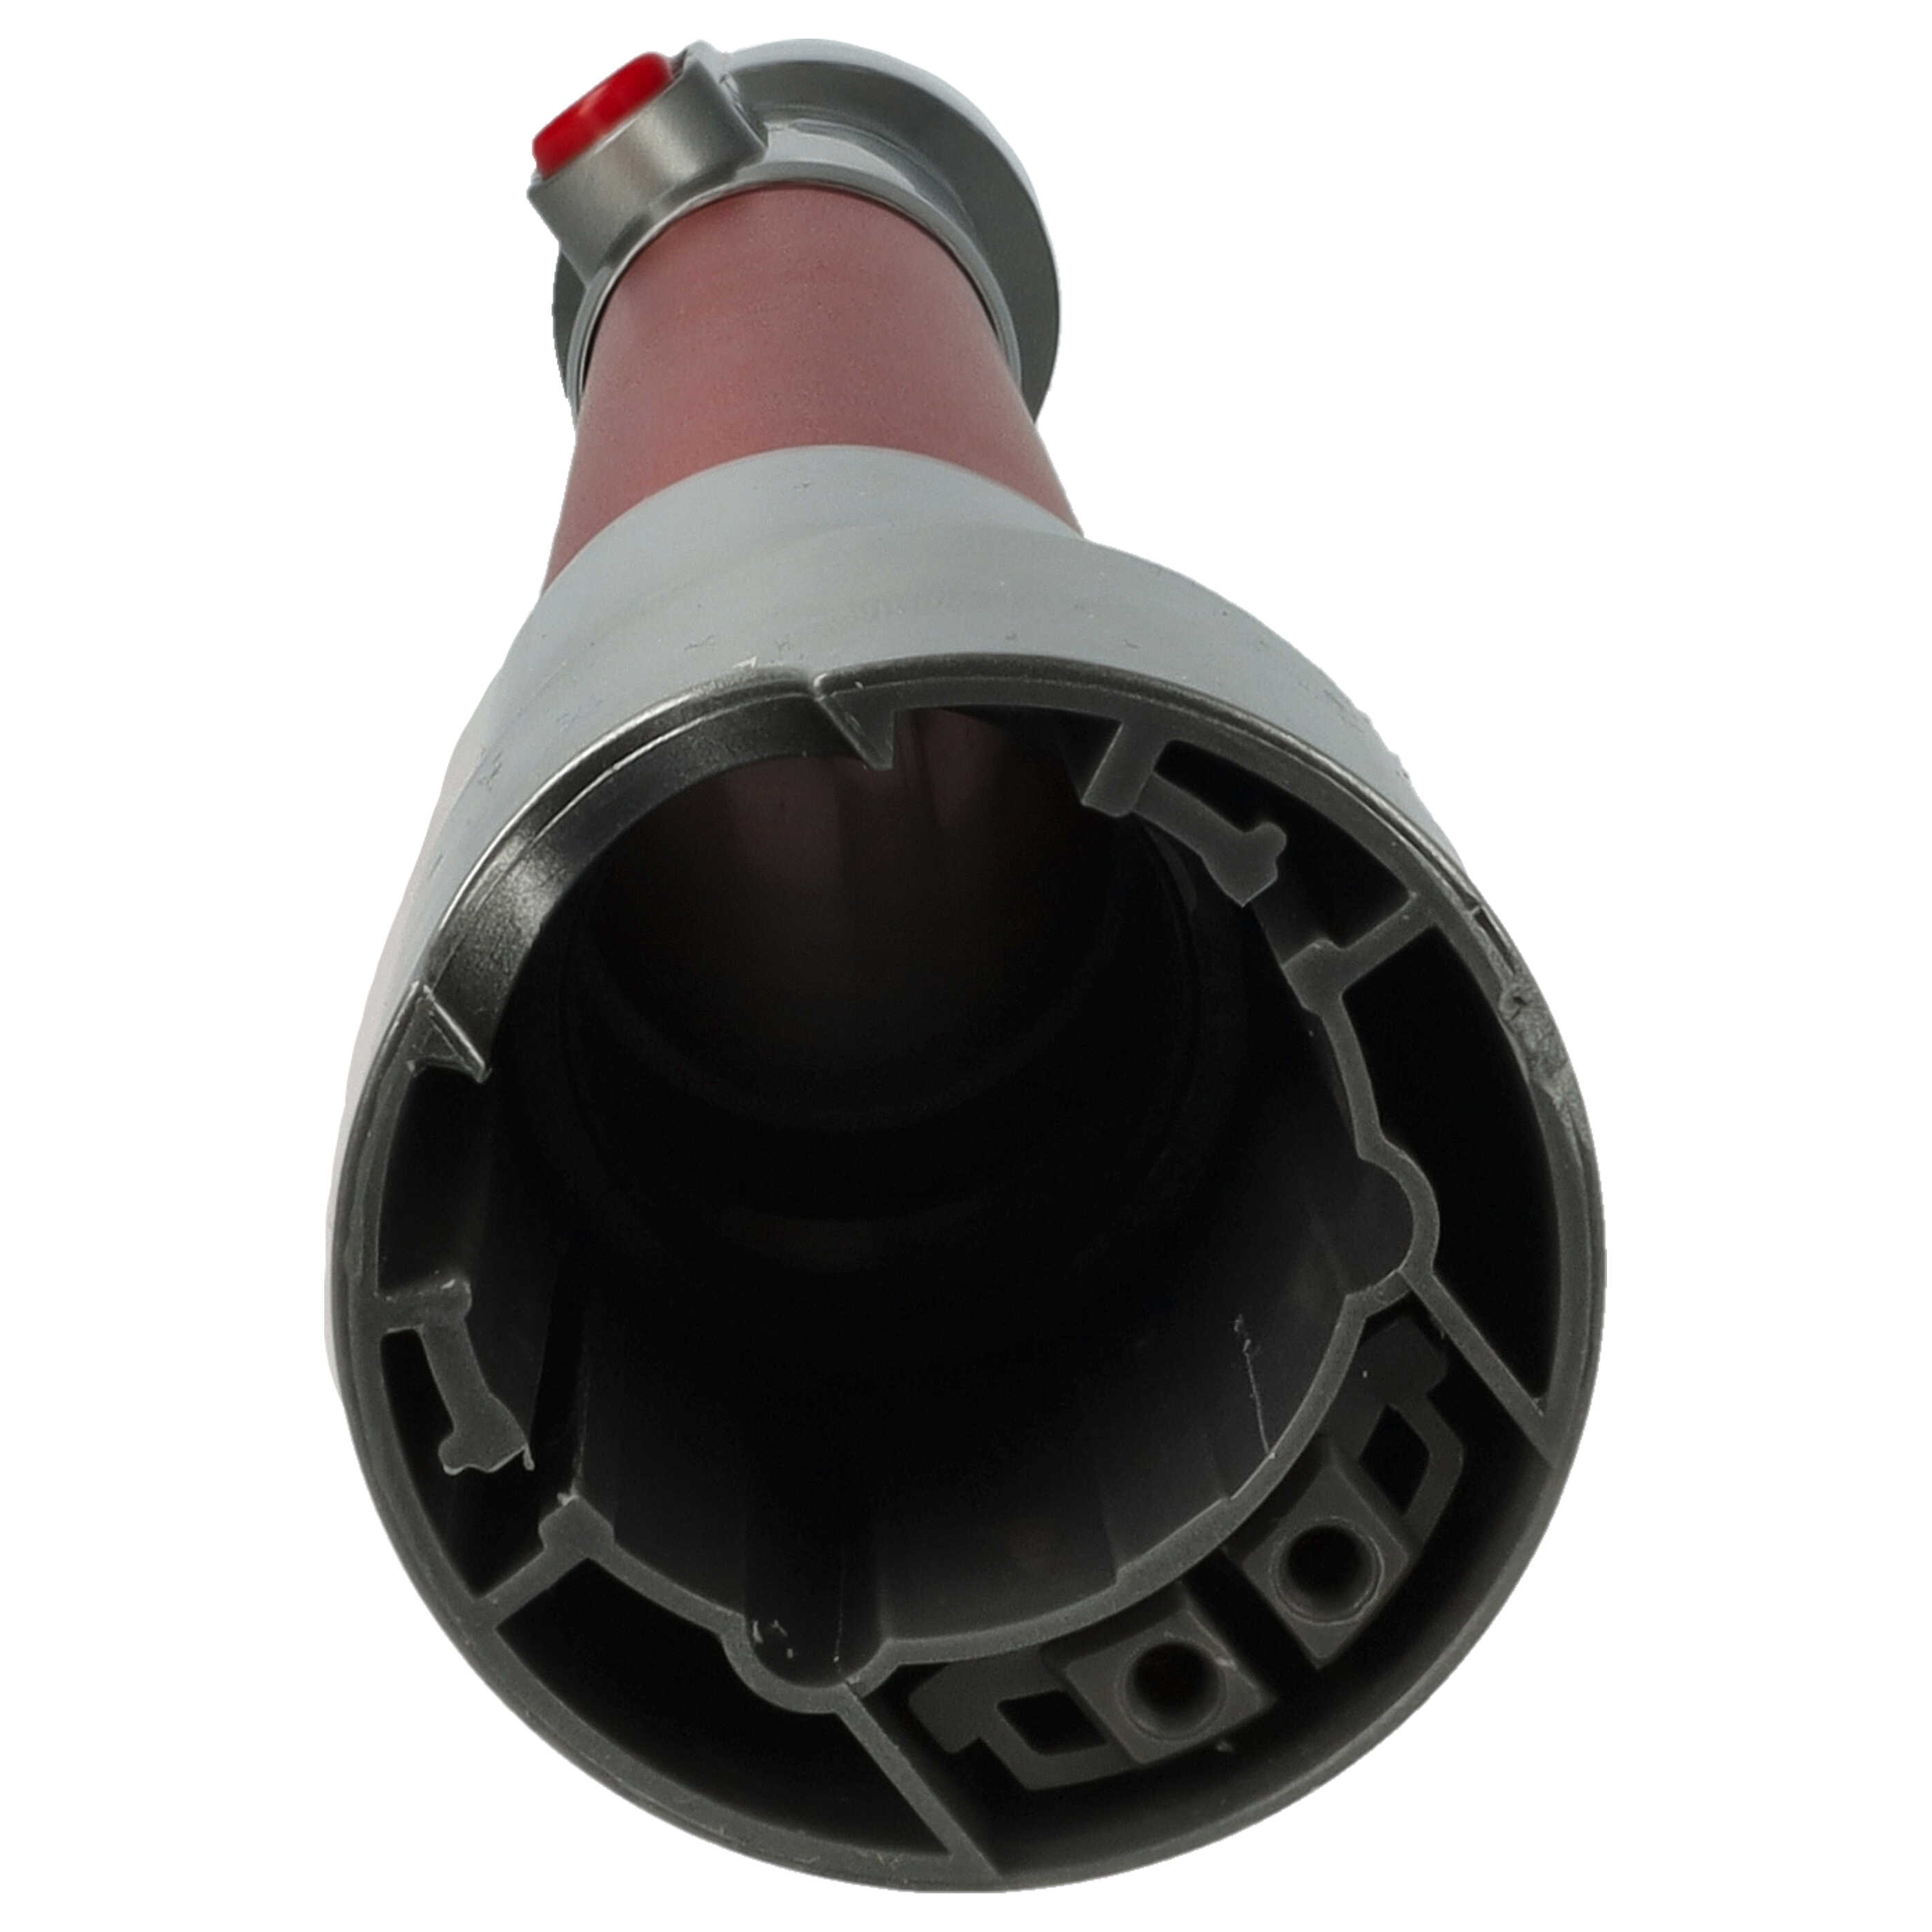 Tubo extensible para aspiradoras Dyson SV10 - rojo